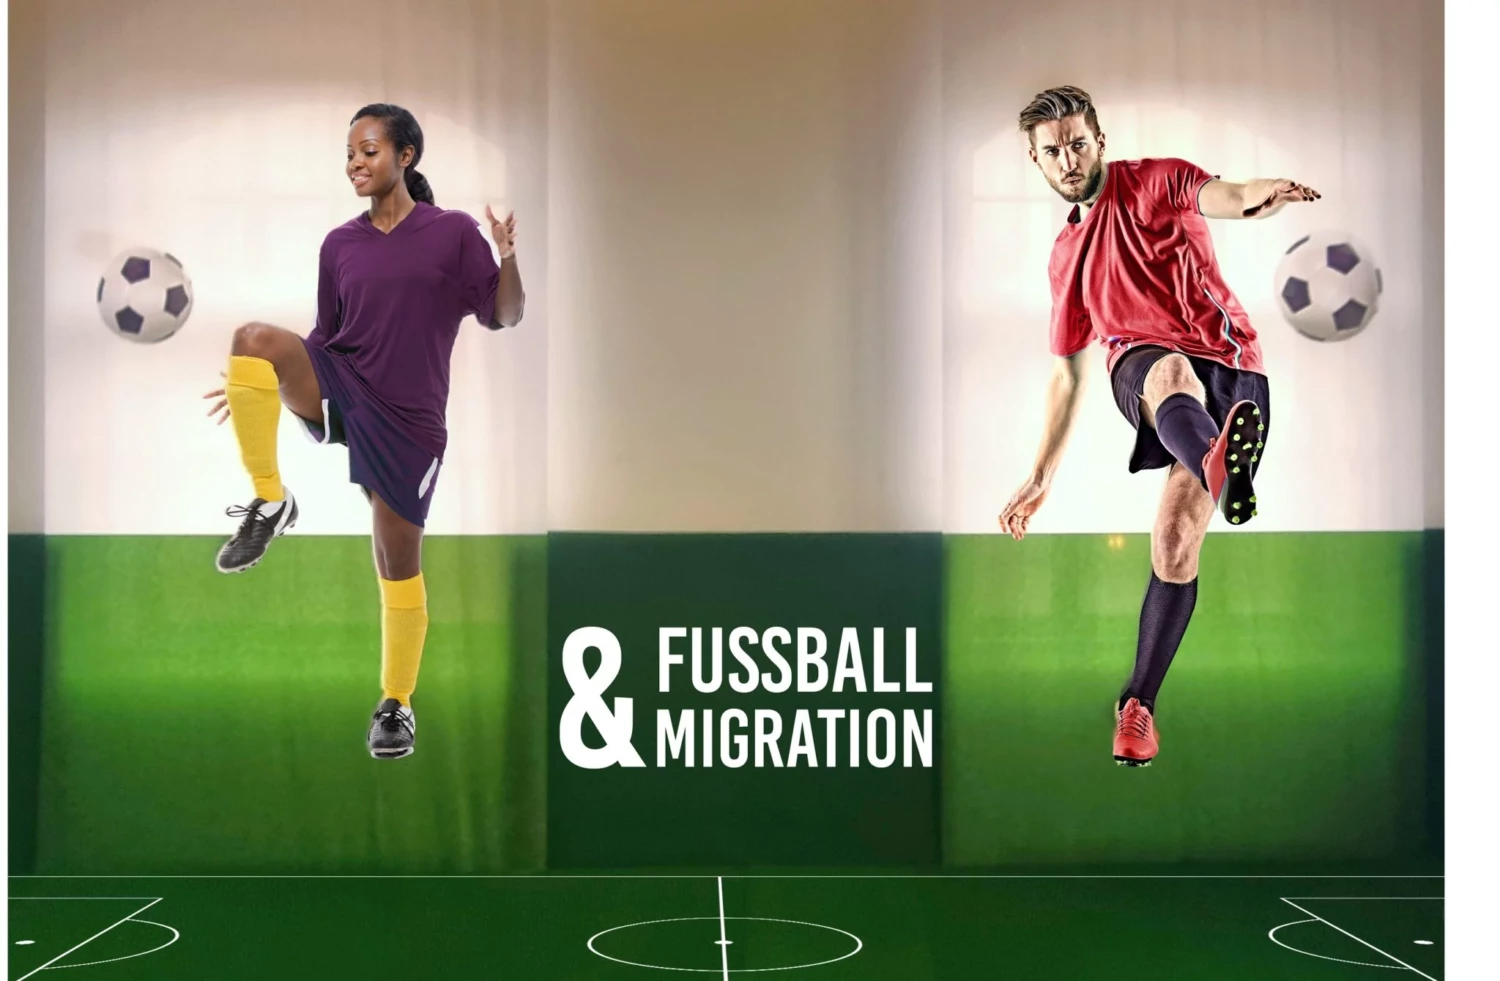 2 Menschen, eins weiblich und Schwarz gelesen, eins weiß und männlich, spielen Fußball auf einem grünen Rasen. In der Mitte der Schriftzug "Fußball&Migration"